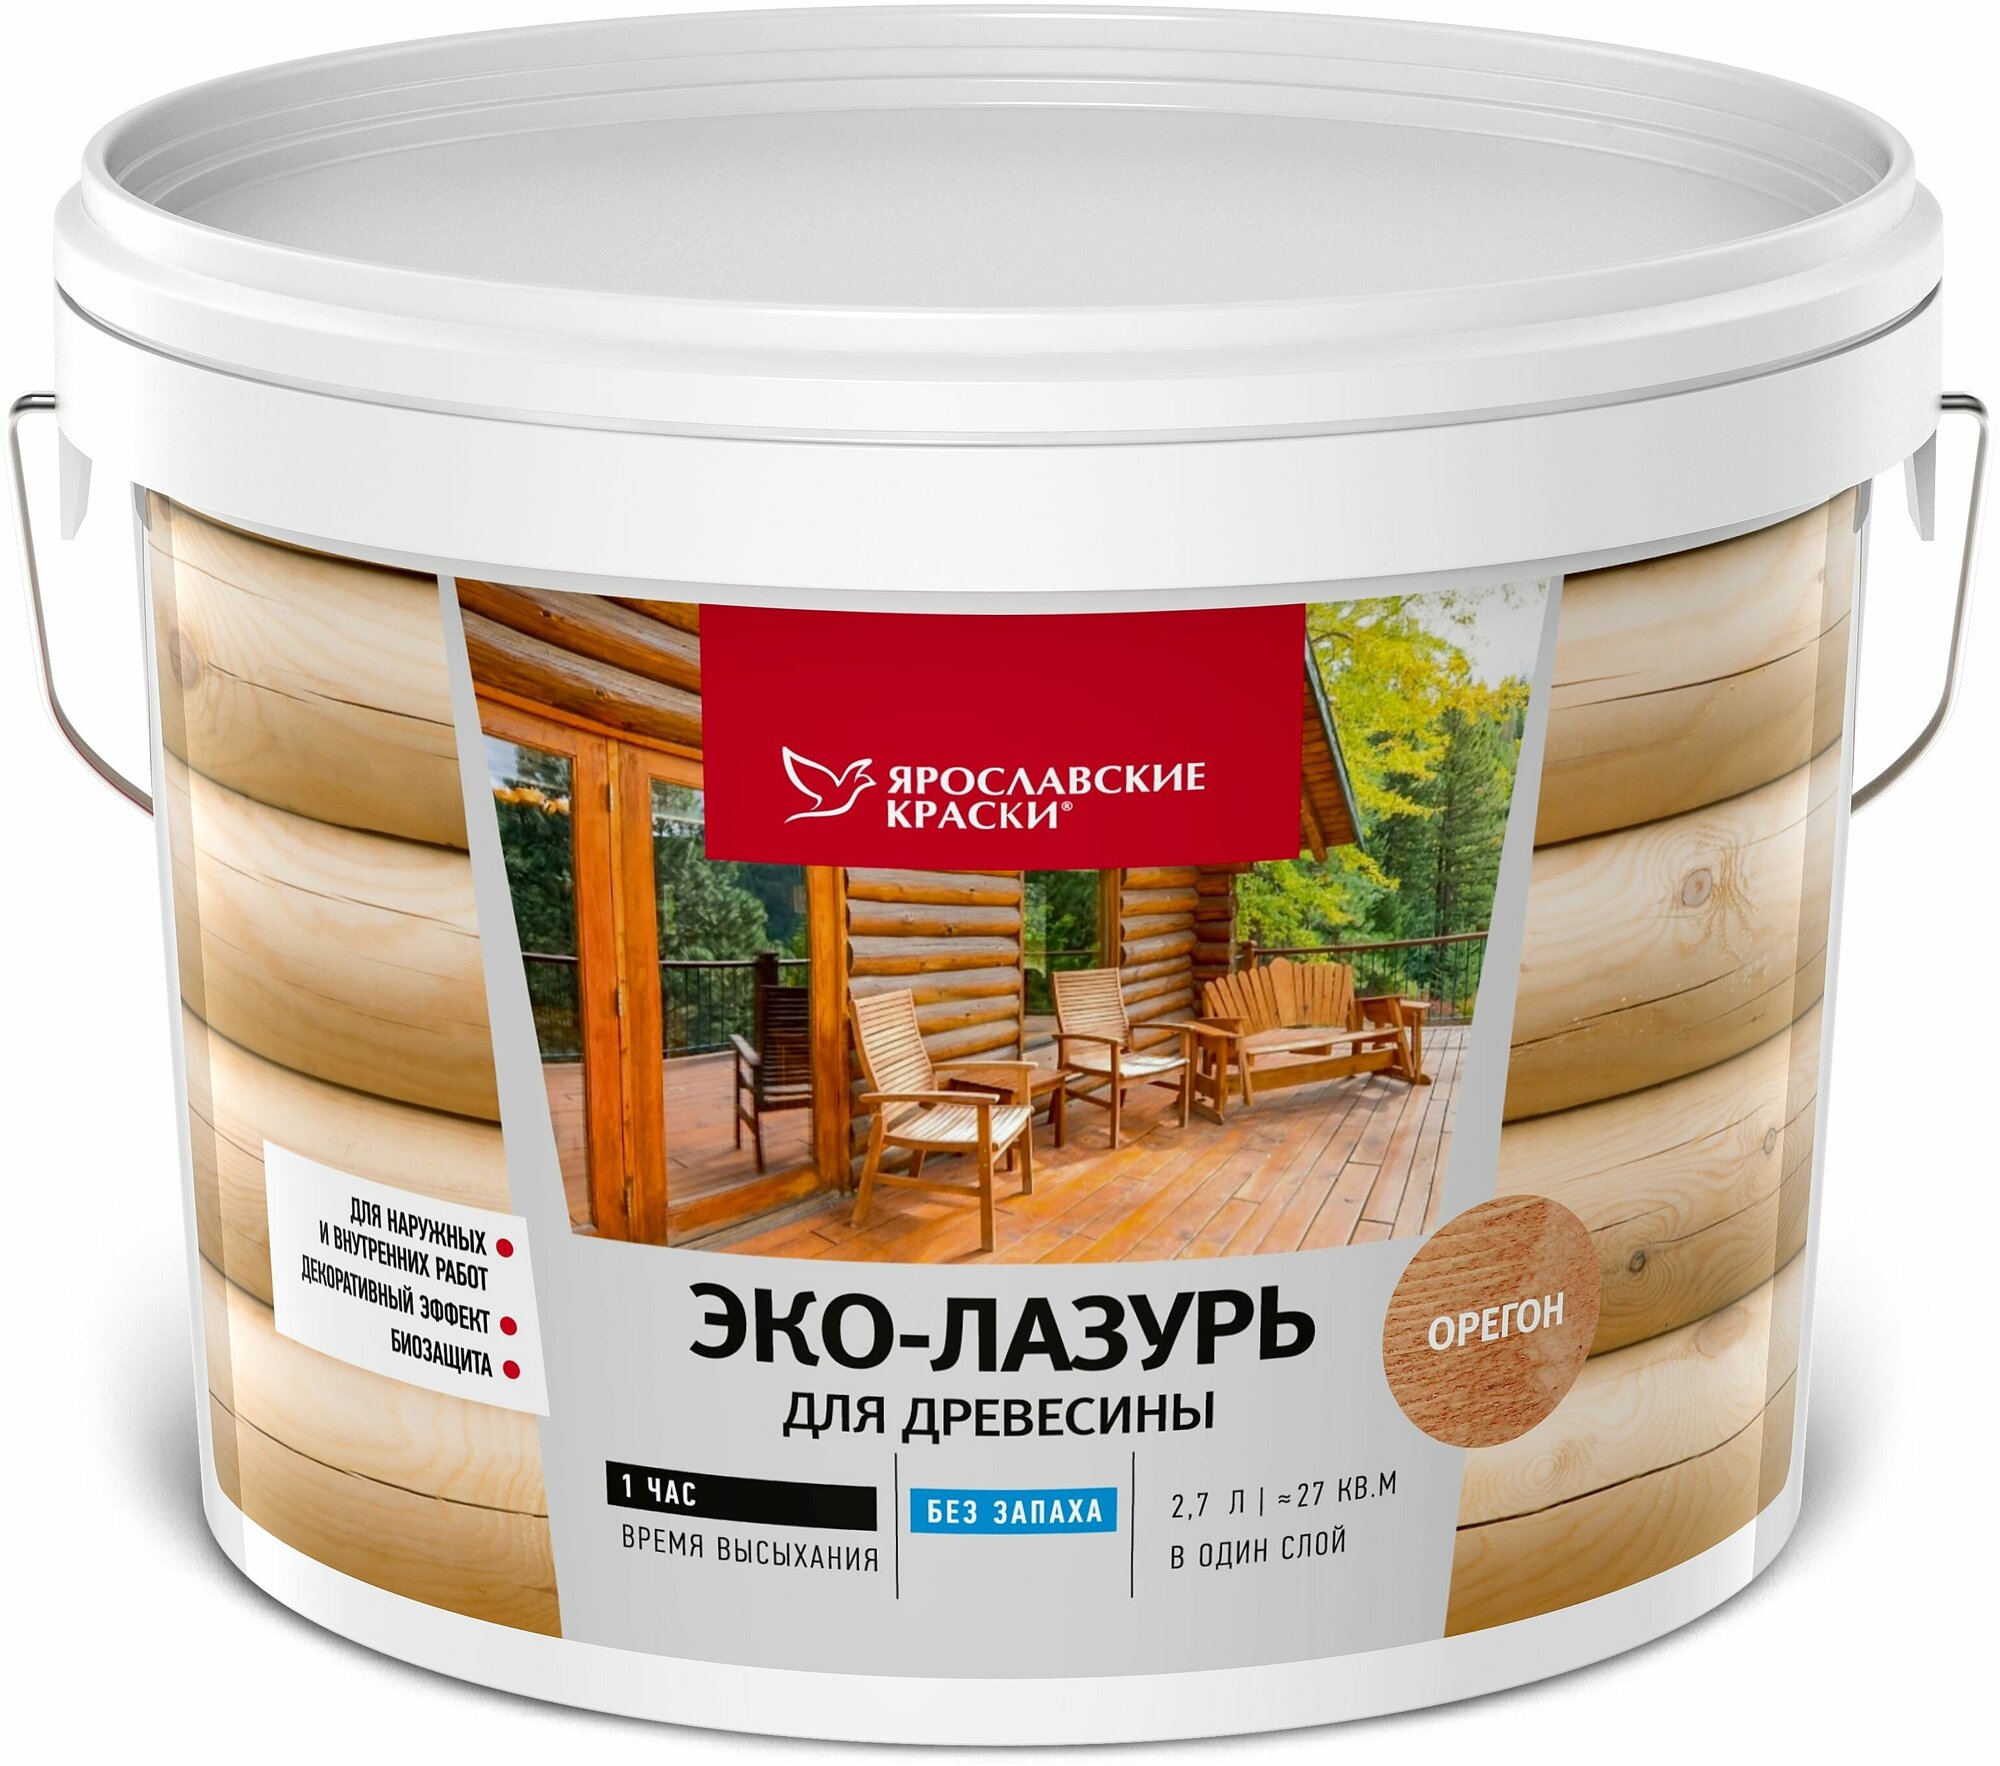 Пропитка для древесины Ярославские краски Эко-лазурь с декоративным эффектом и биозащитой цвет орегон 2.7 л